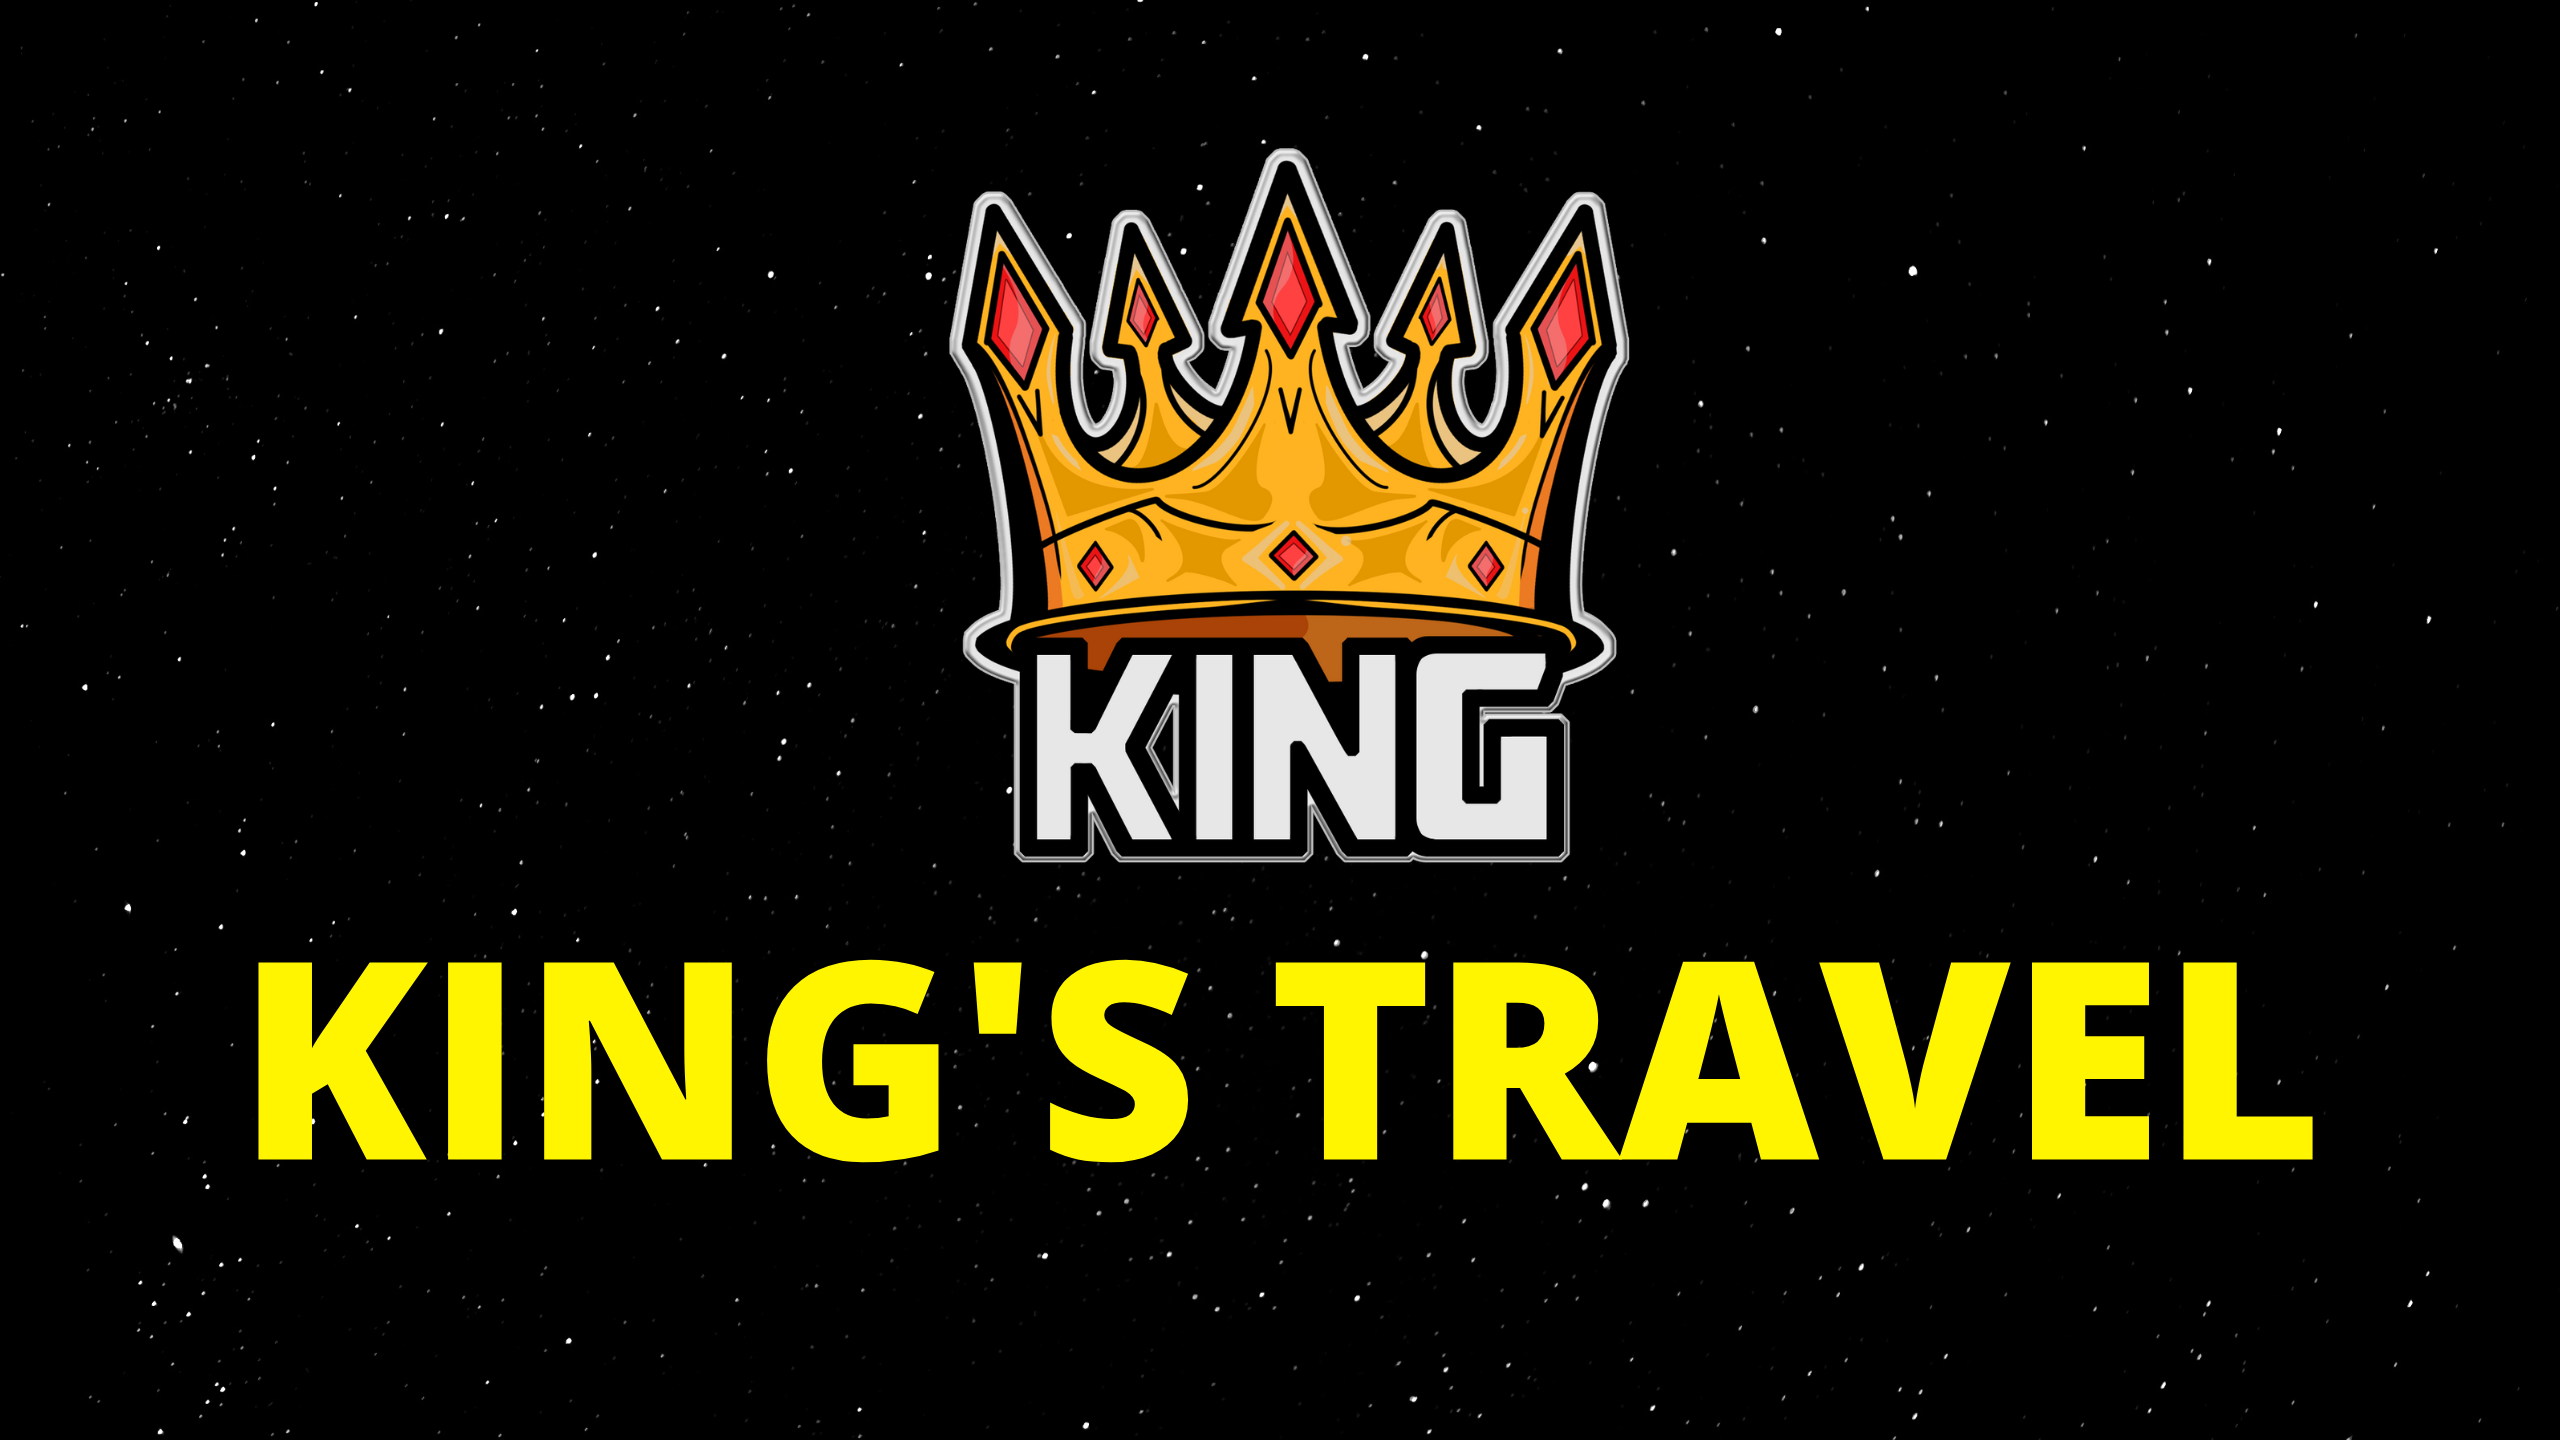 KINGS TRAVEL | PRANVERE NE LEFKADA 3 DITE €89 - KINGS TRAVEL